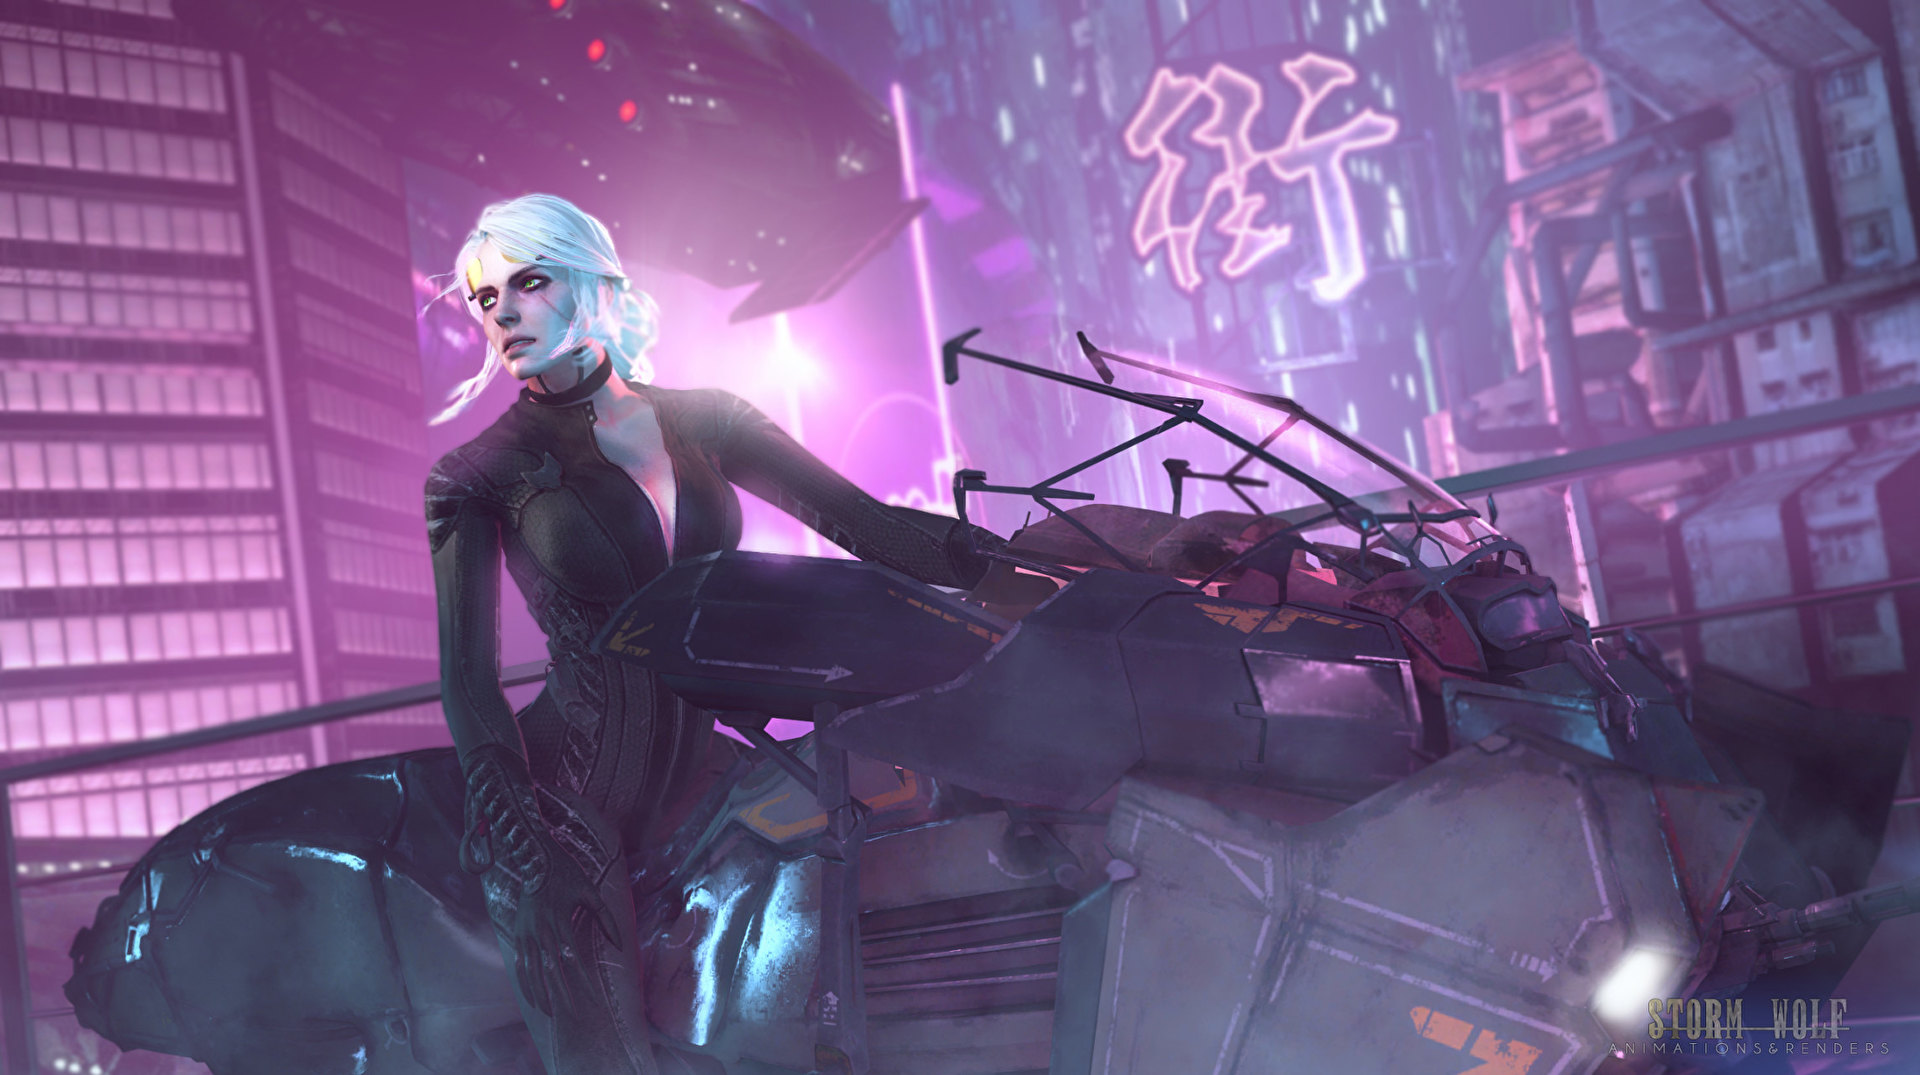 【情報】《Cyberpunk 2077》夜之城裡 廣告無處不在 @PS4 / PlayStation4 哈啦板 - 巴哈姆特